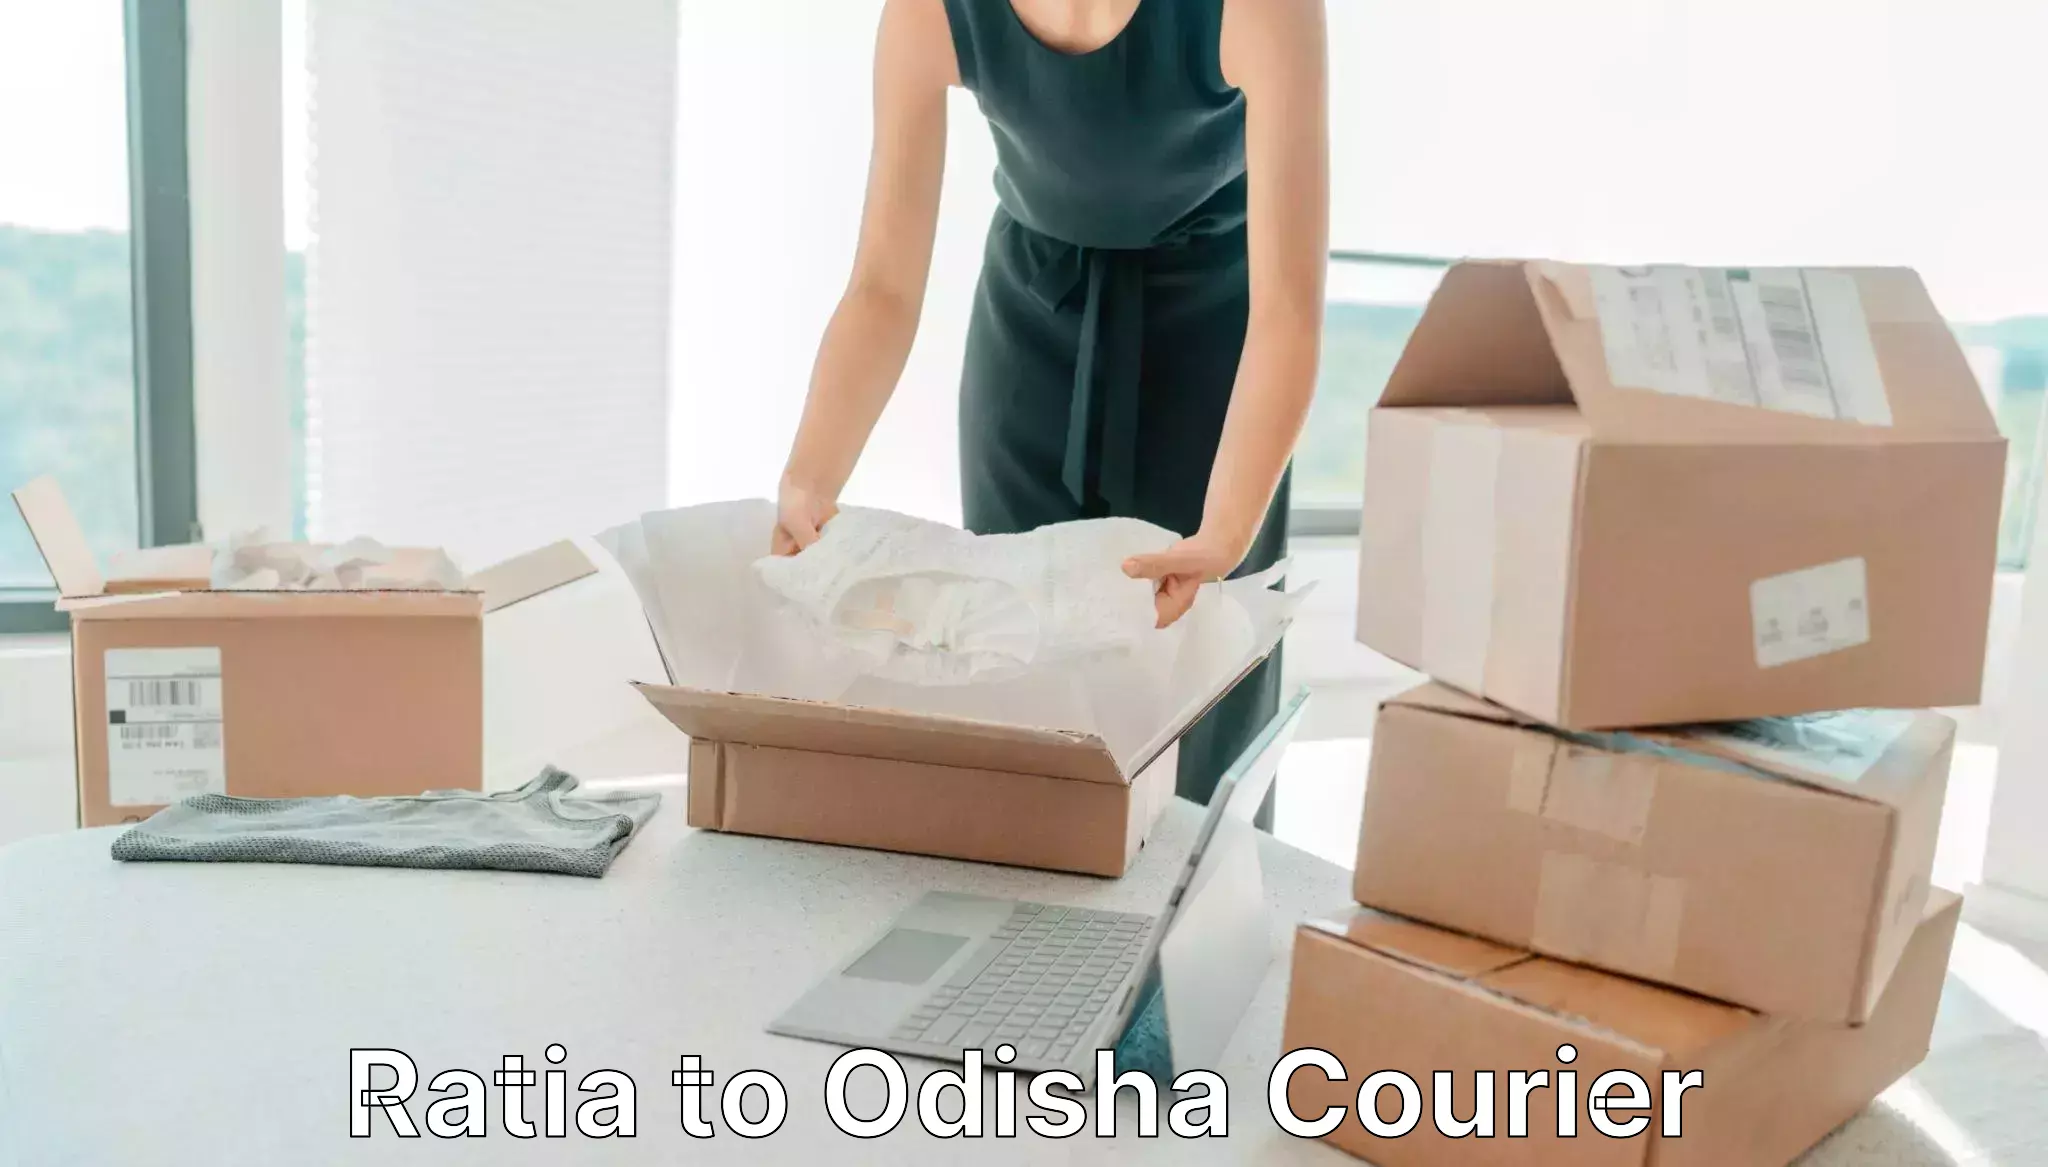 Courier service efficiency in Ratia to Daspalla